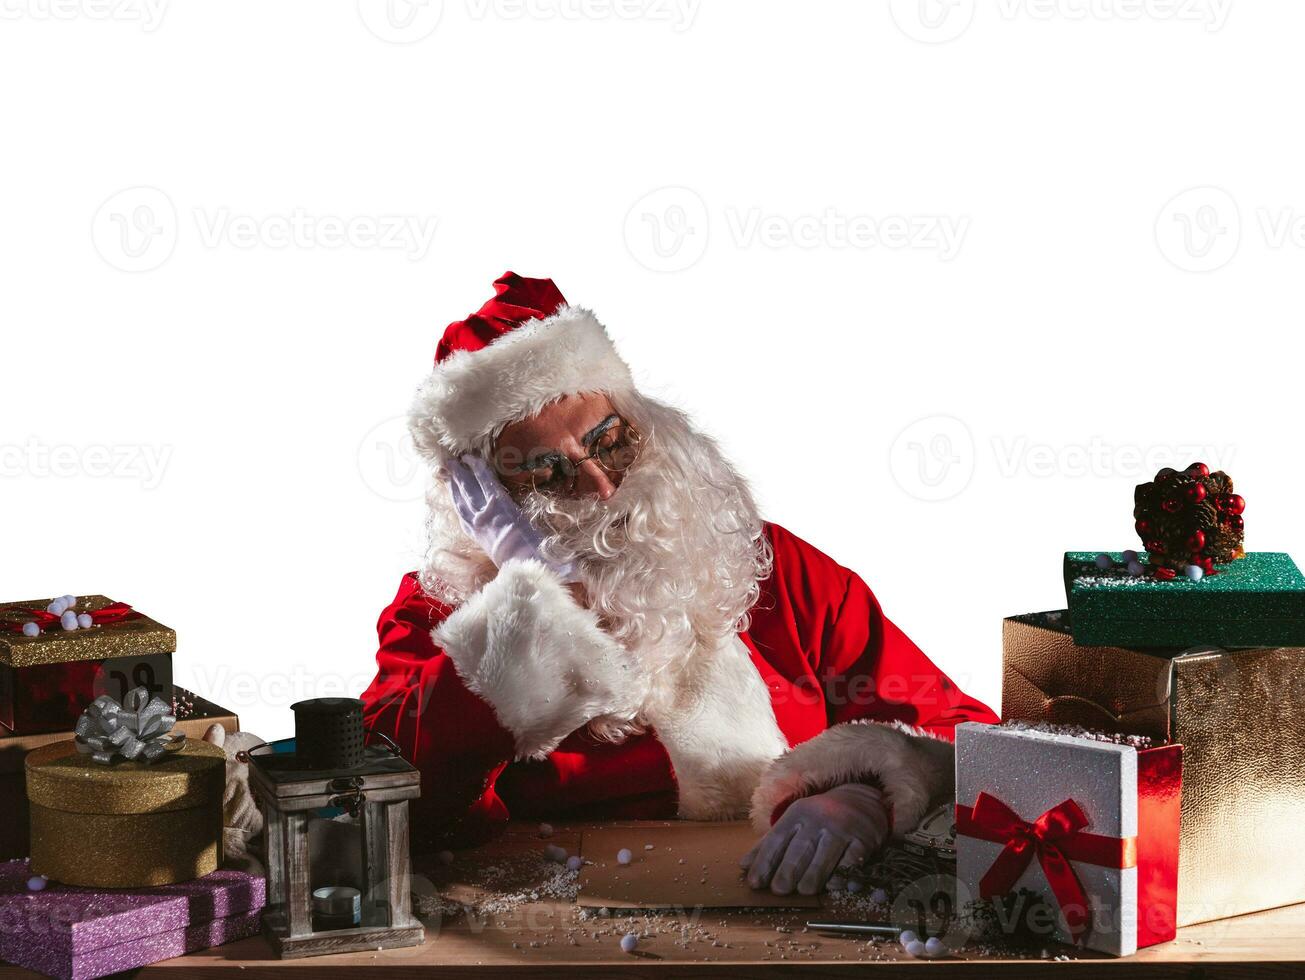 moe de kerstman claus is slapen ten gevolge naar Kerstmis overwerk foto